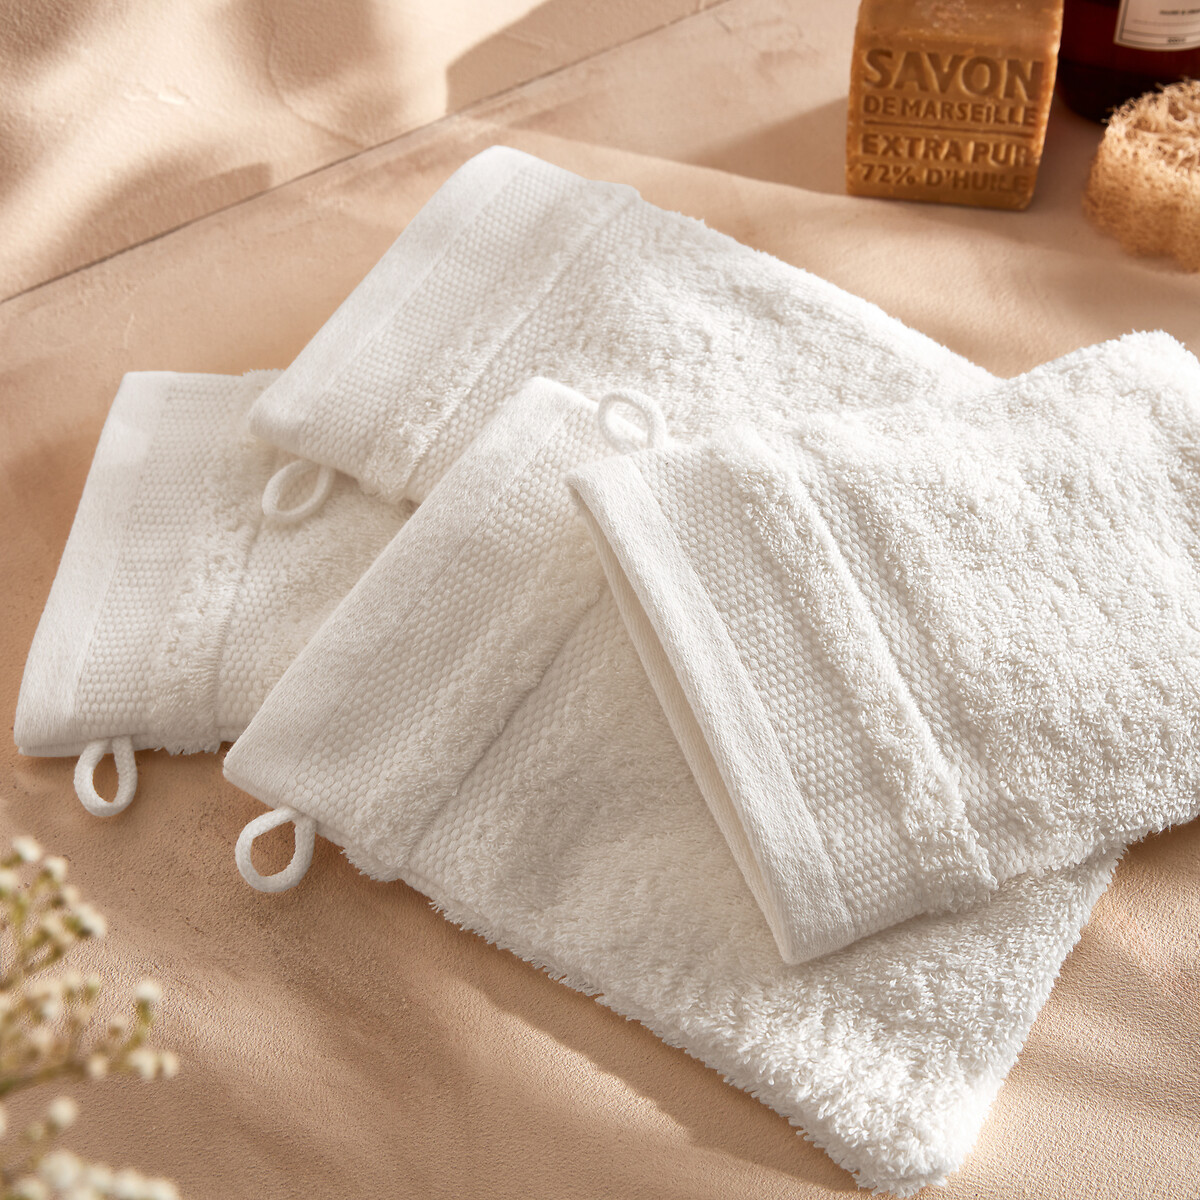 Kheops egyptian cotton bath towel La Redoute Interieurs